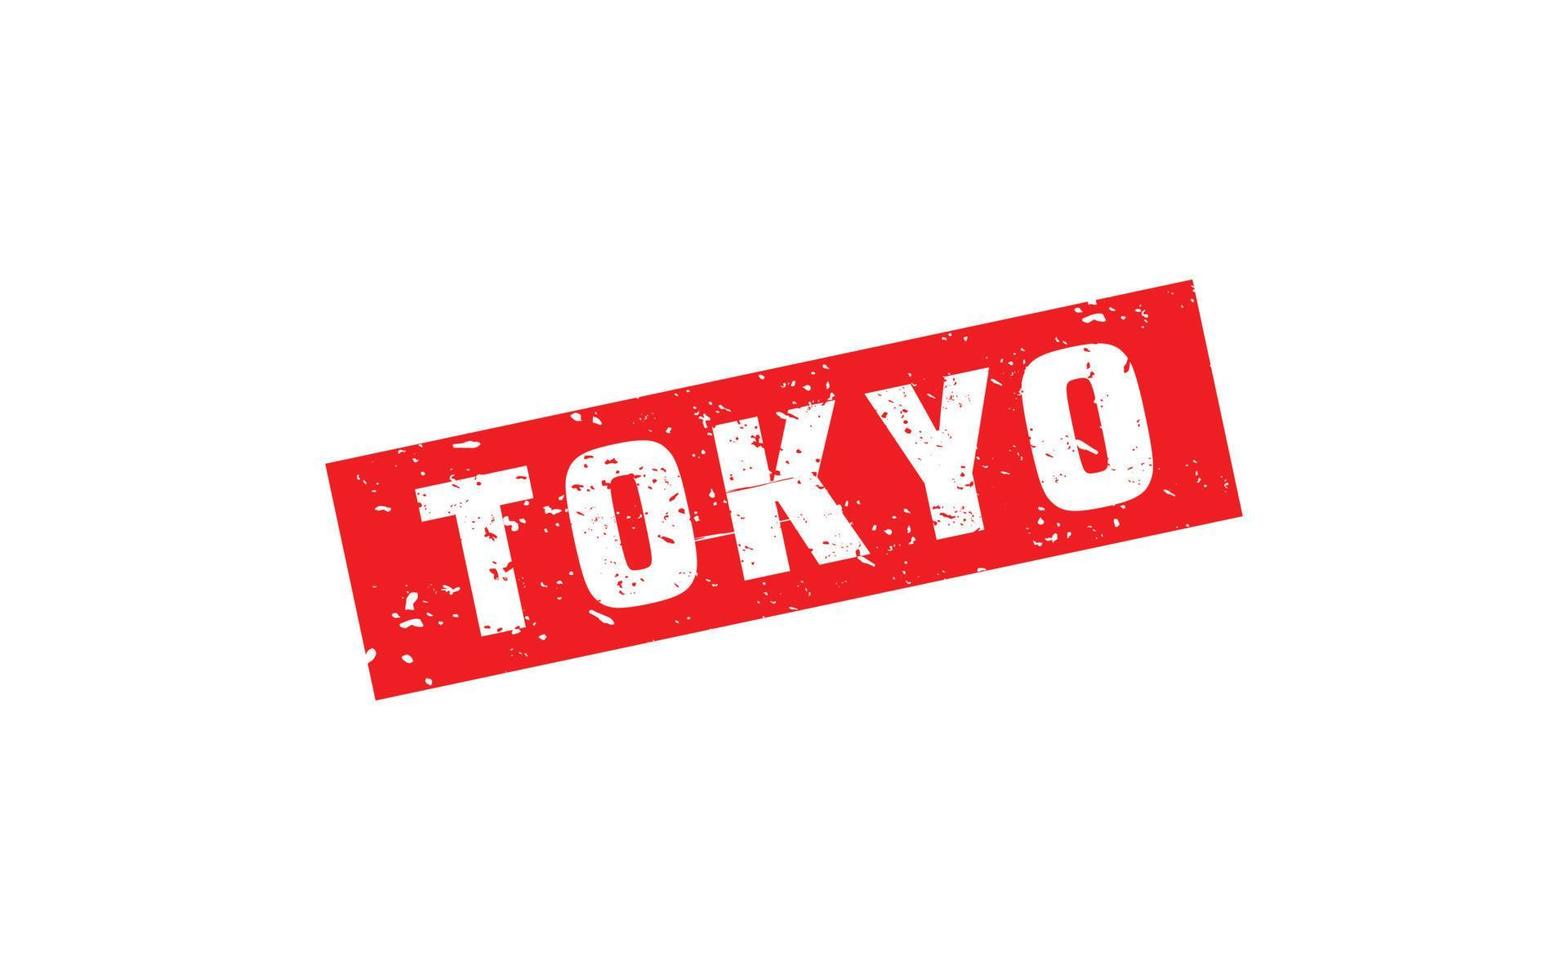 Tokio-Japan-Stempel mit Grunge-Stil auf weißem Hintergrund vektor